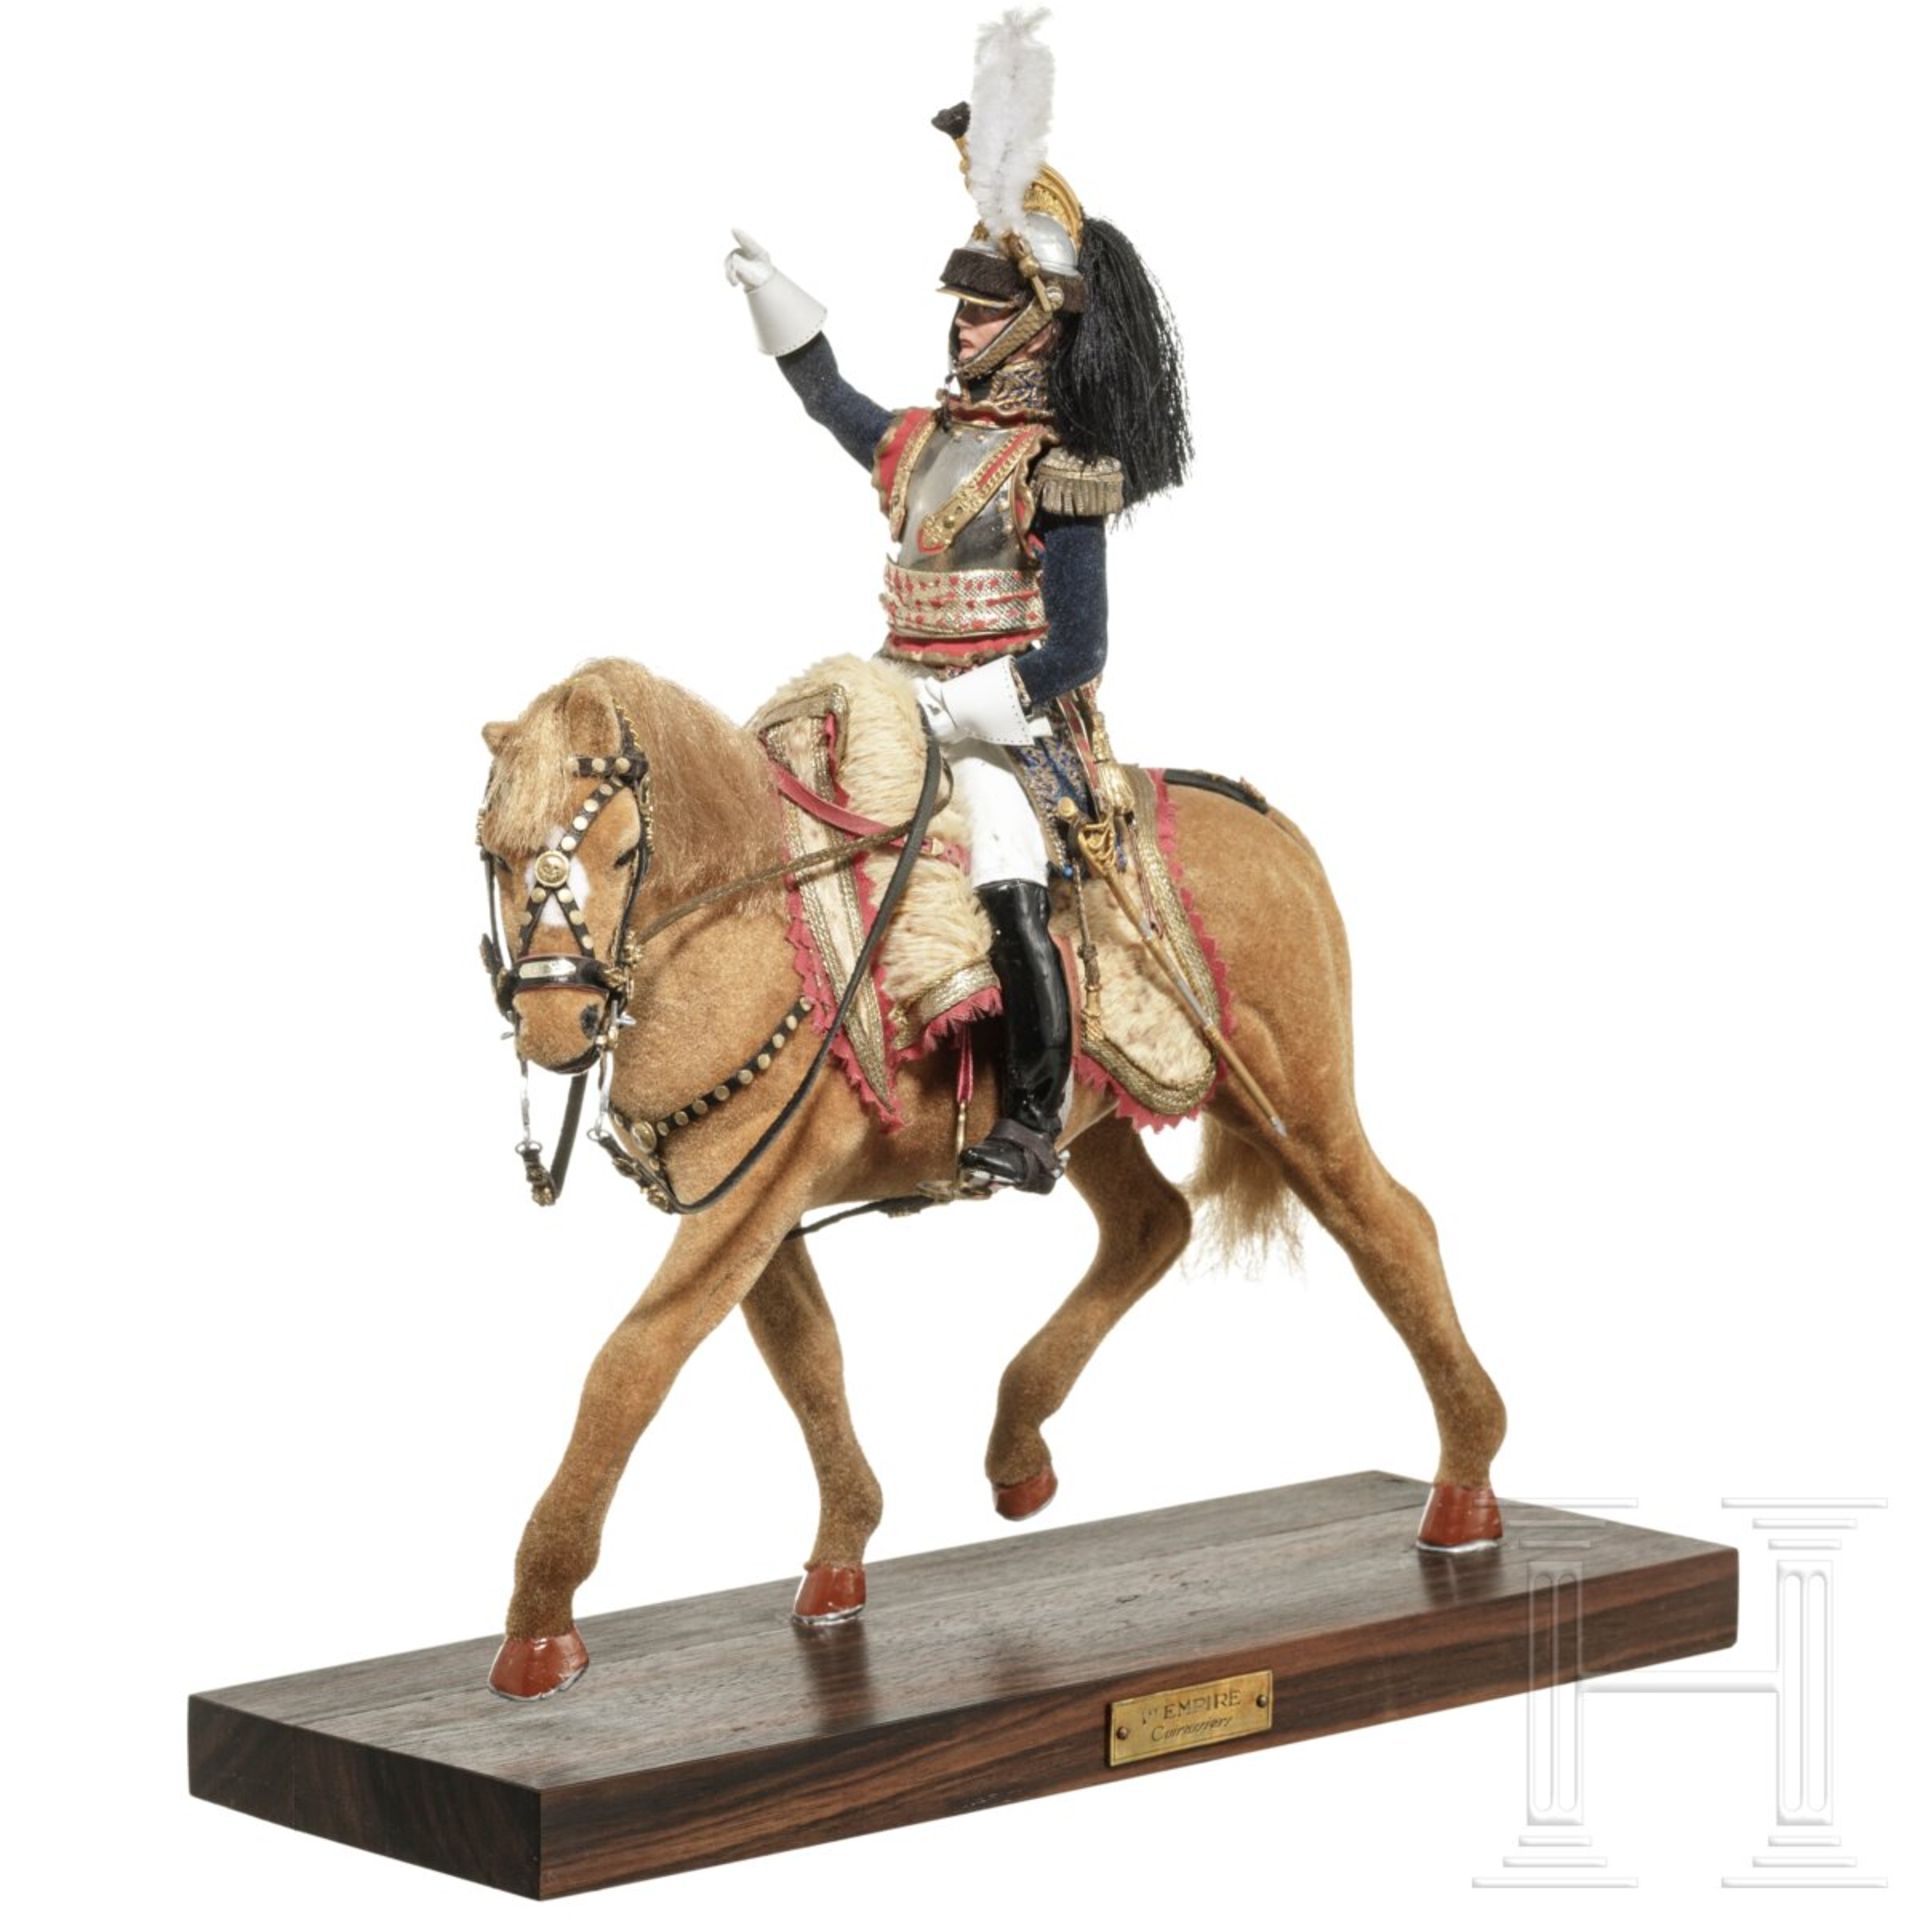 General der Kürassiere um 1810 auf Pferd - Uniformfigur von Marcel Riffet, 20. Jhdt. - Bild 2 aus 6